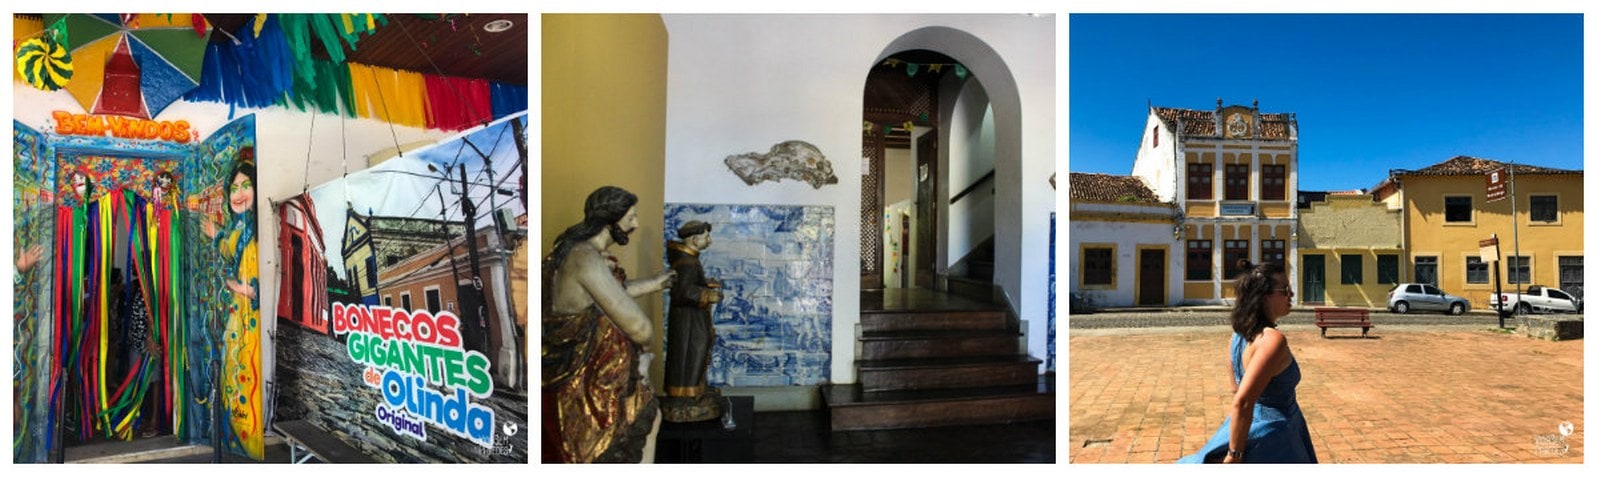 O que fazer no centro histórico de Olinda, Pernambuco: Museus